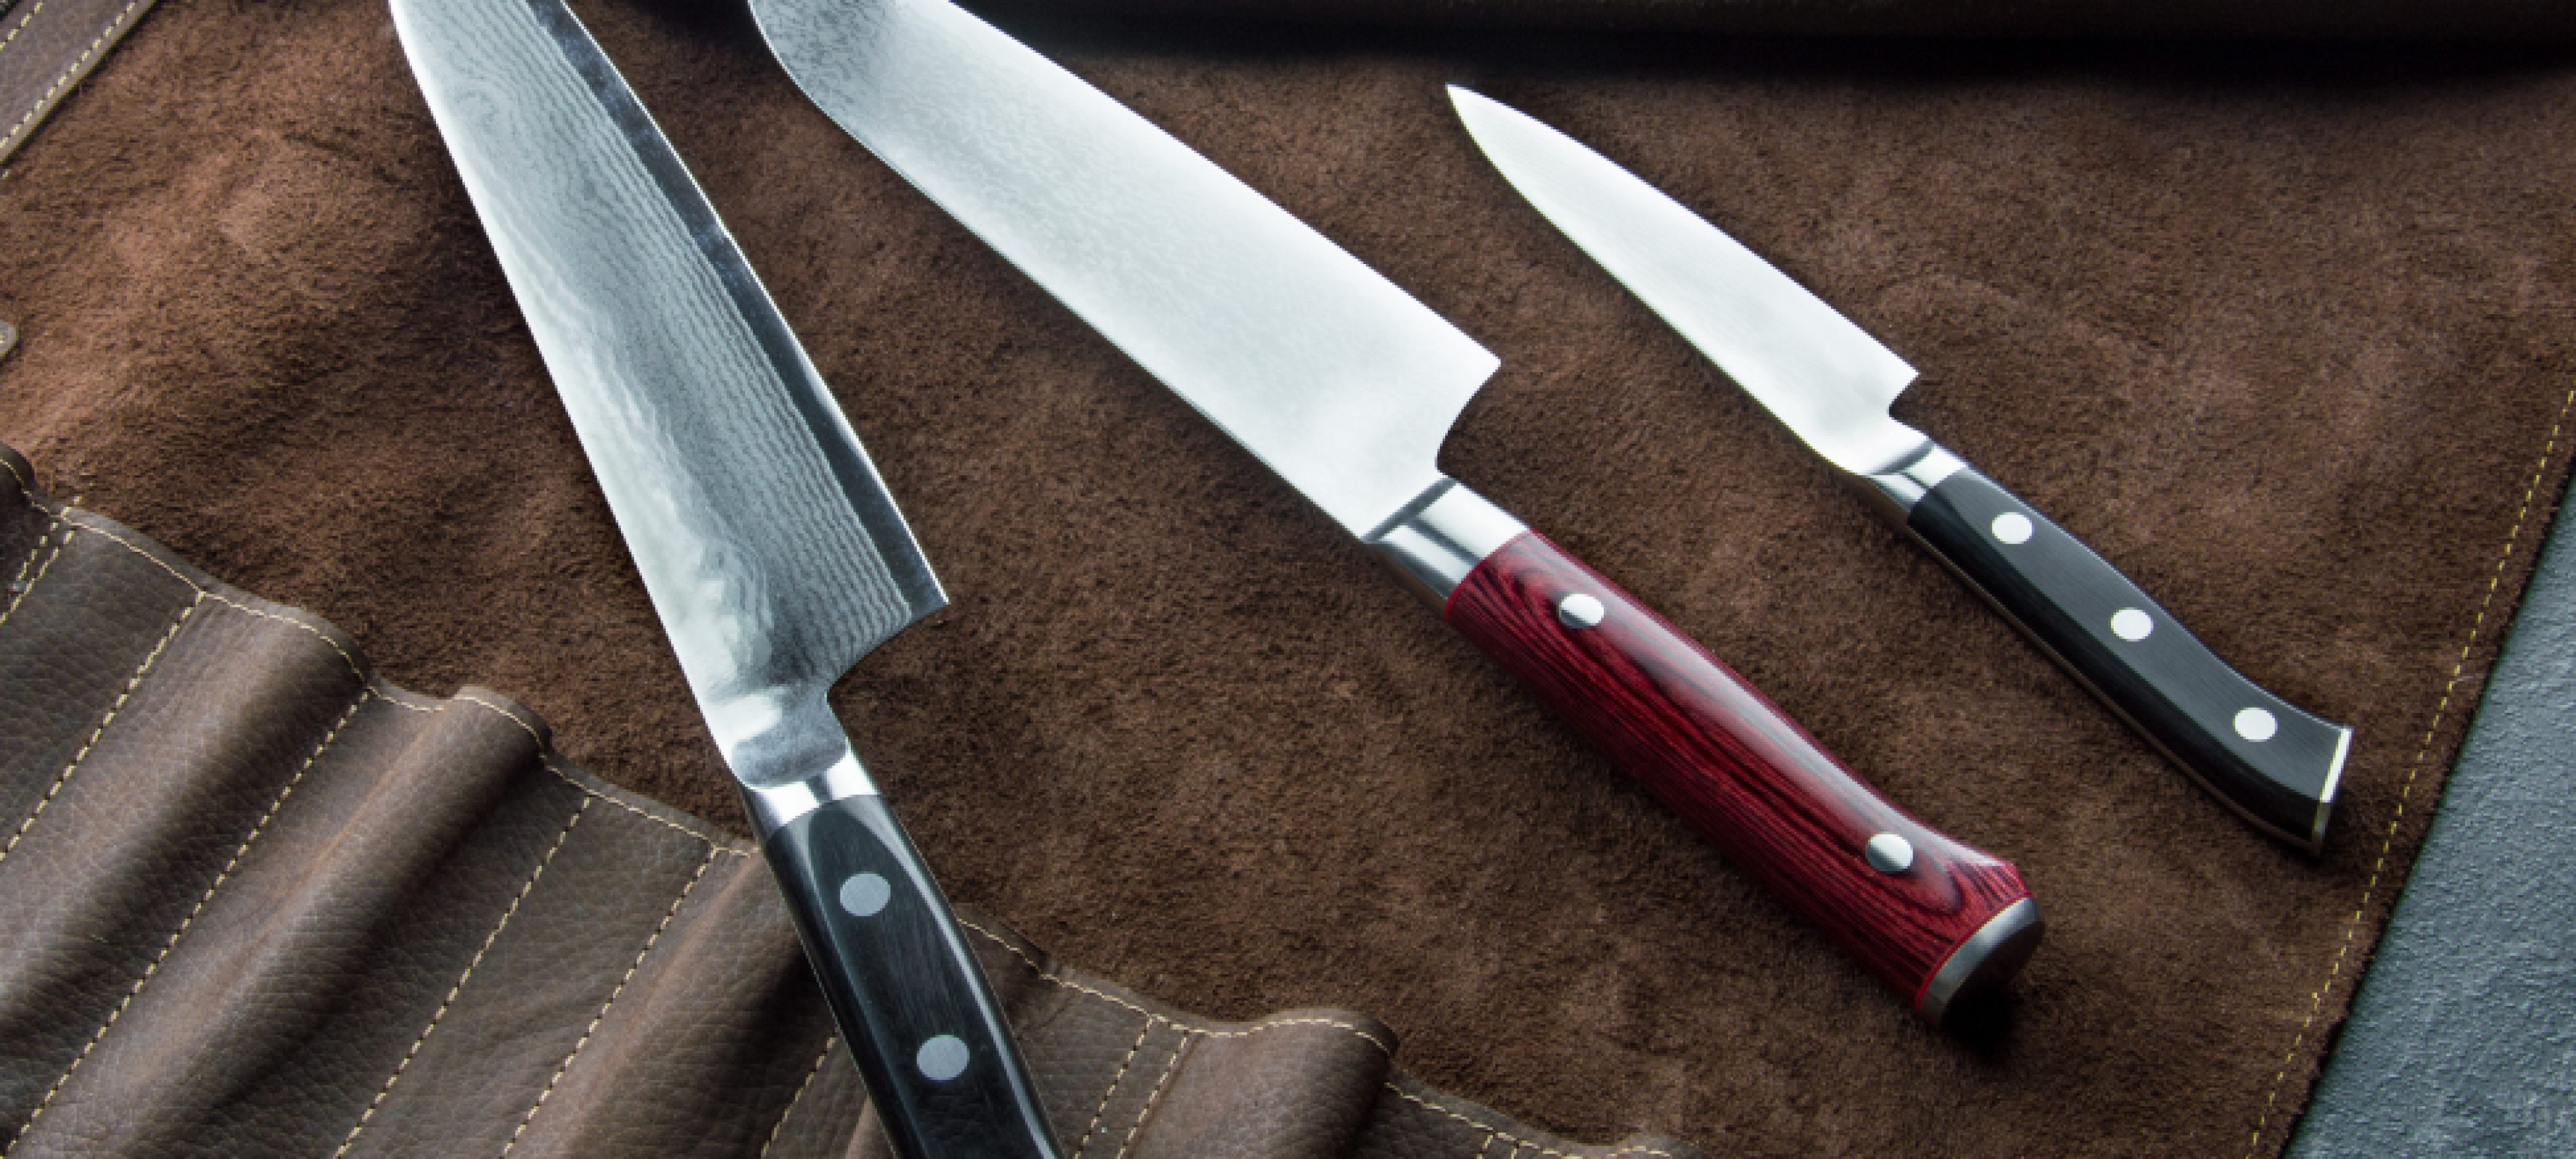 Best Knife for Butchering Deer